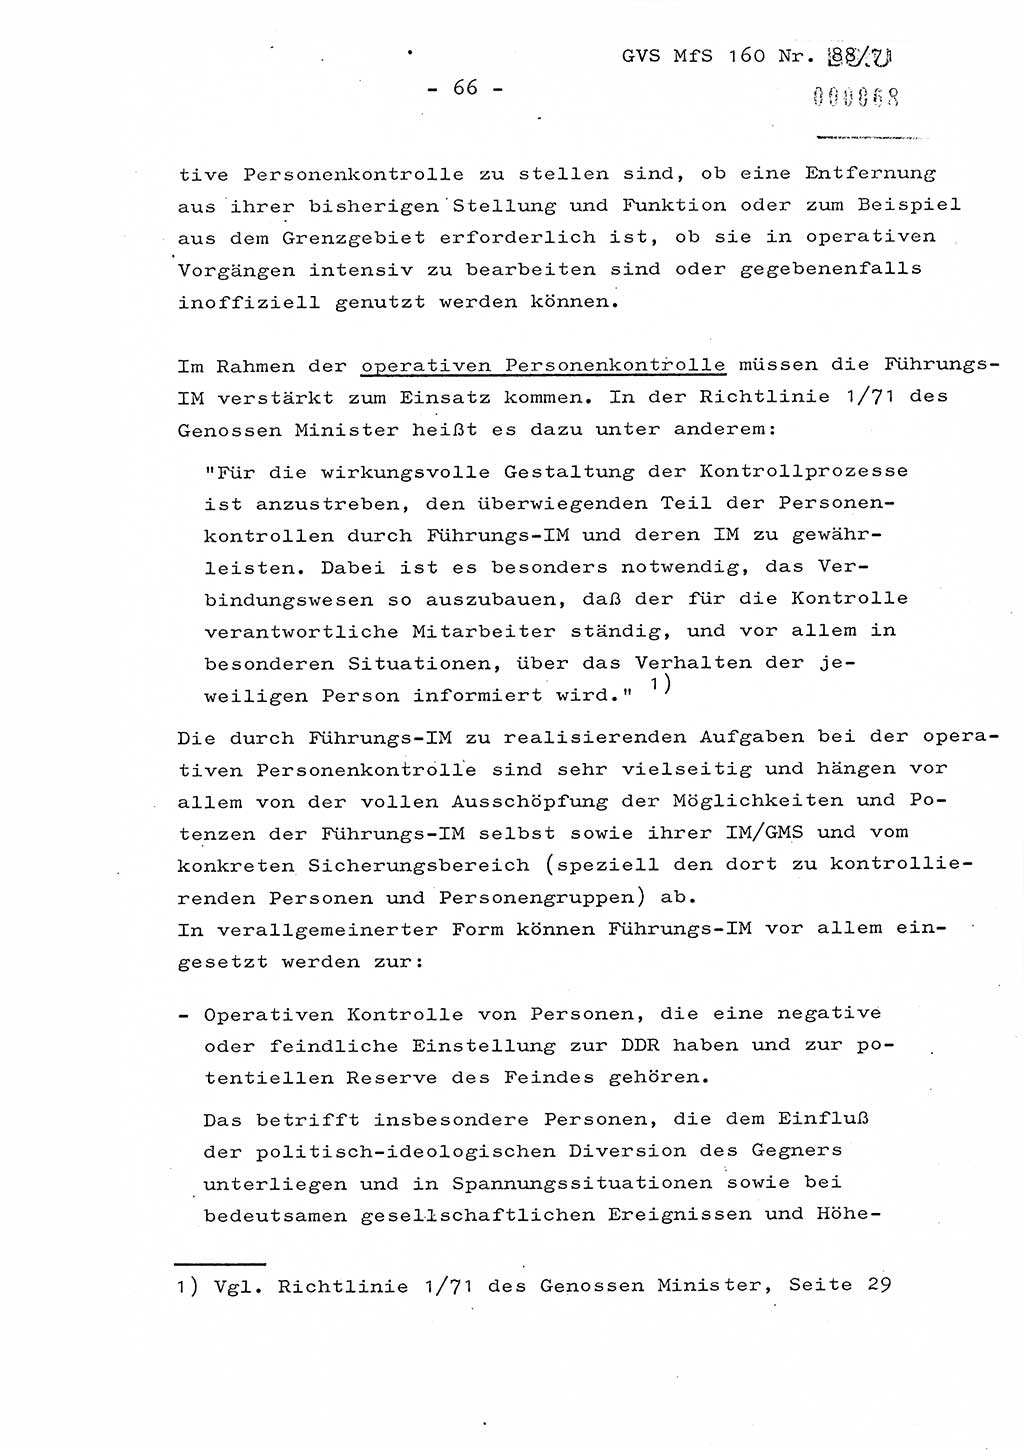 Dissertation Oberstleutnant Josef Schwarz (BV Schwerin), Major Fritz Amm (JHS), Hauptmann Peter Gräßler (JHS), Ministerium für Staatssicherheit (MfS) [Deutsche Demokratische Republik (DDR)], Juristische Hochschule (JHS), Geheime Verschlußsache (GVS) 160-88/71, Potsdam 1972, Seite 66 (Diss. MfS DDR JHS GVS 160-88/71 1972, S. 66)